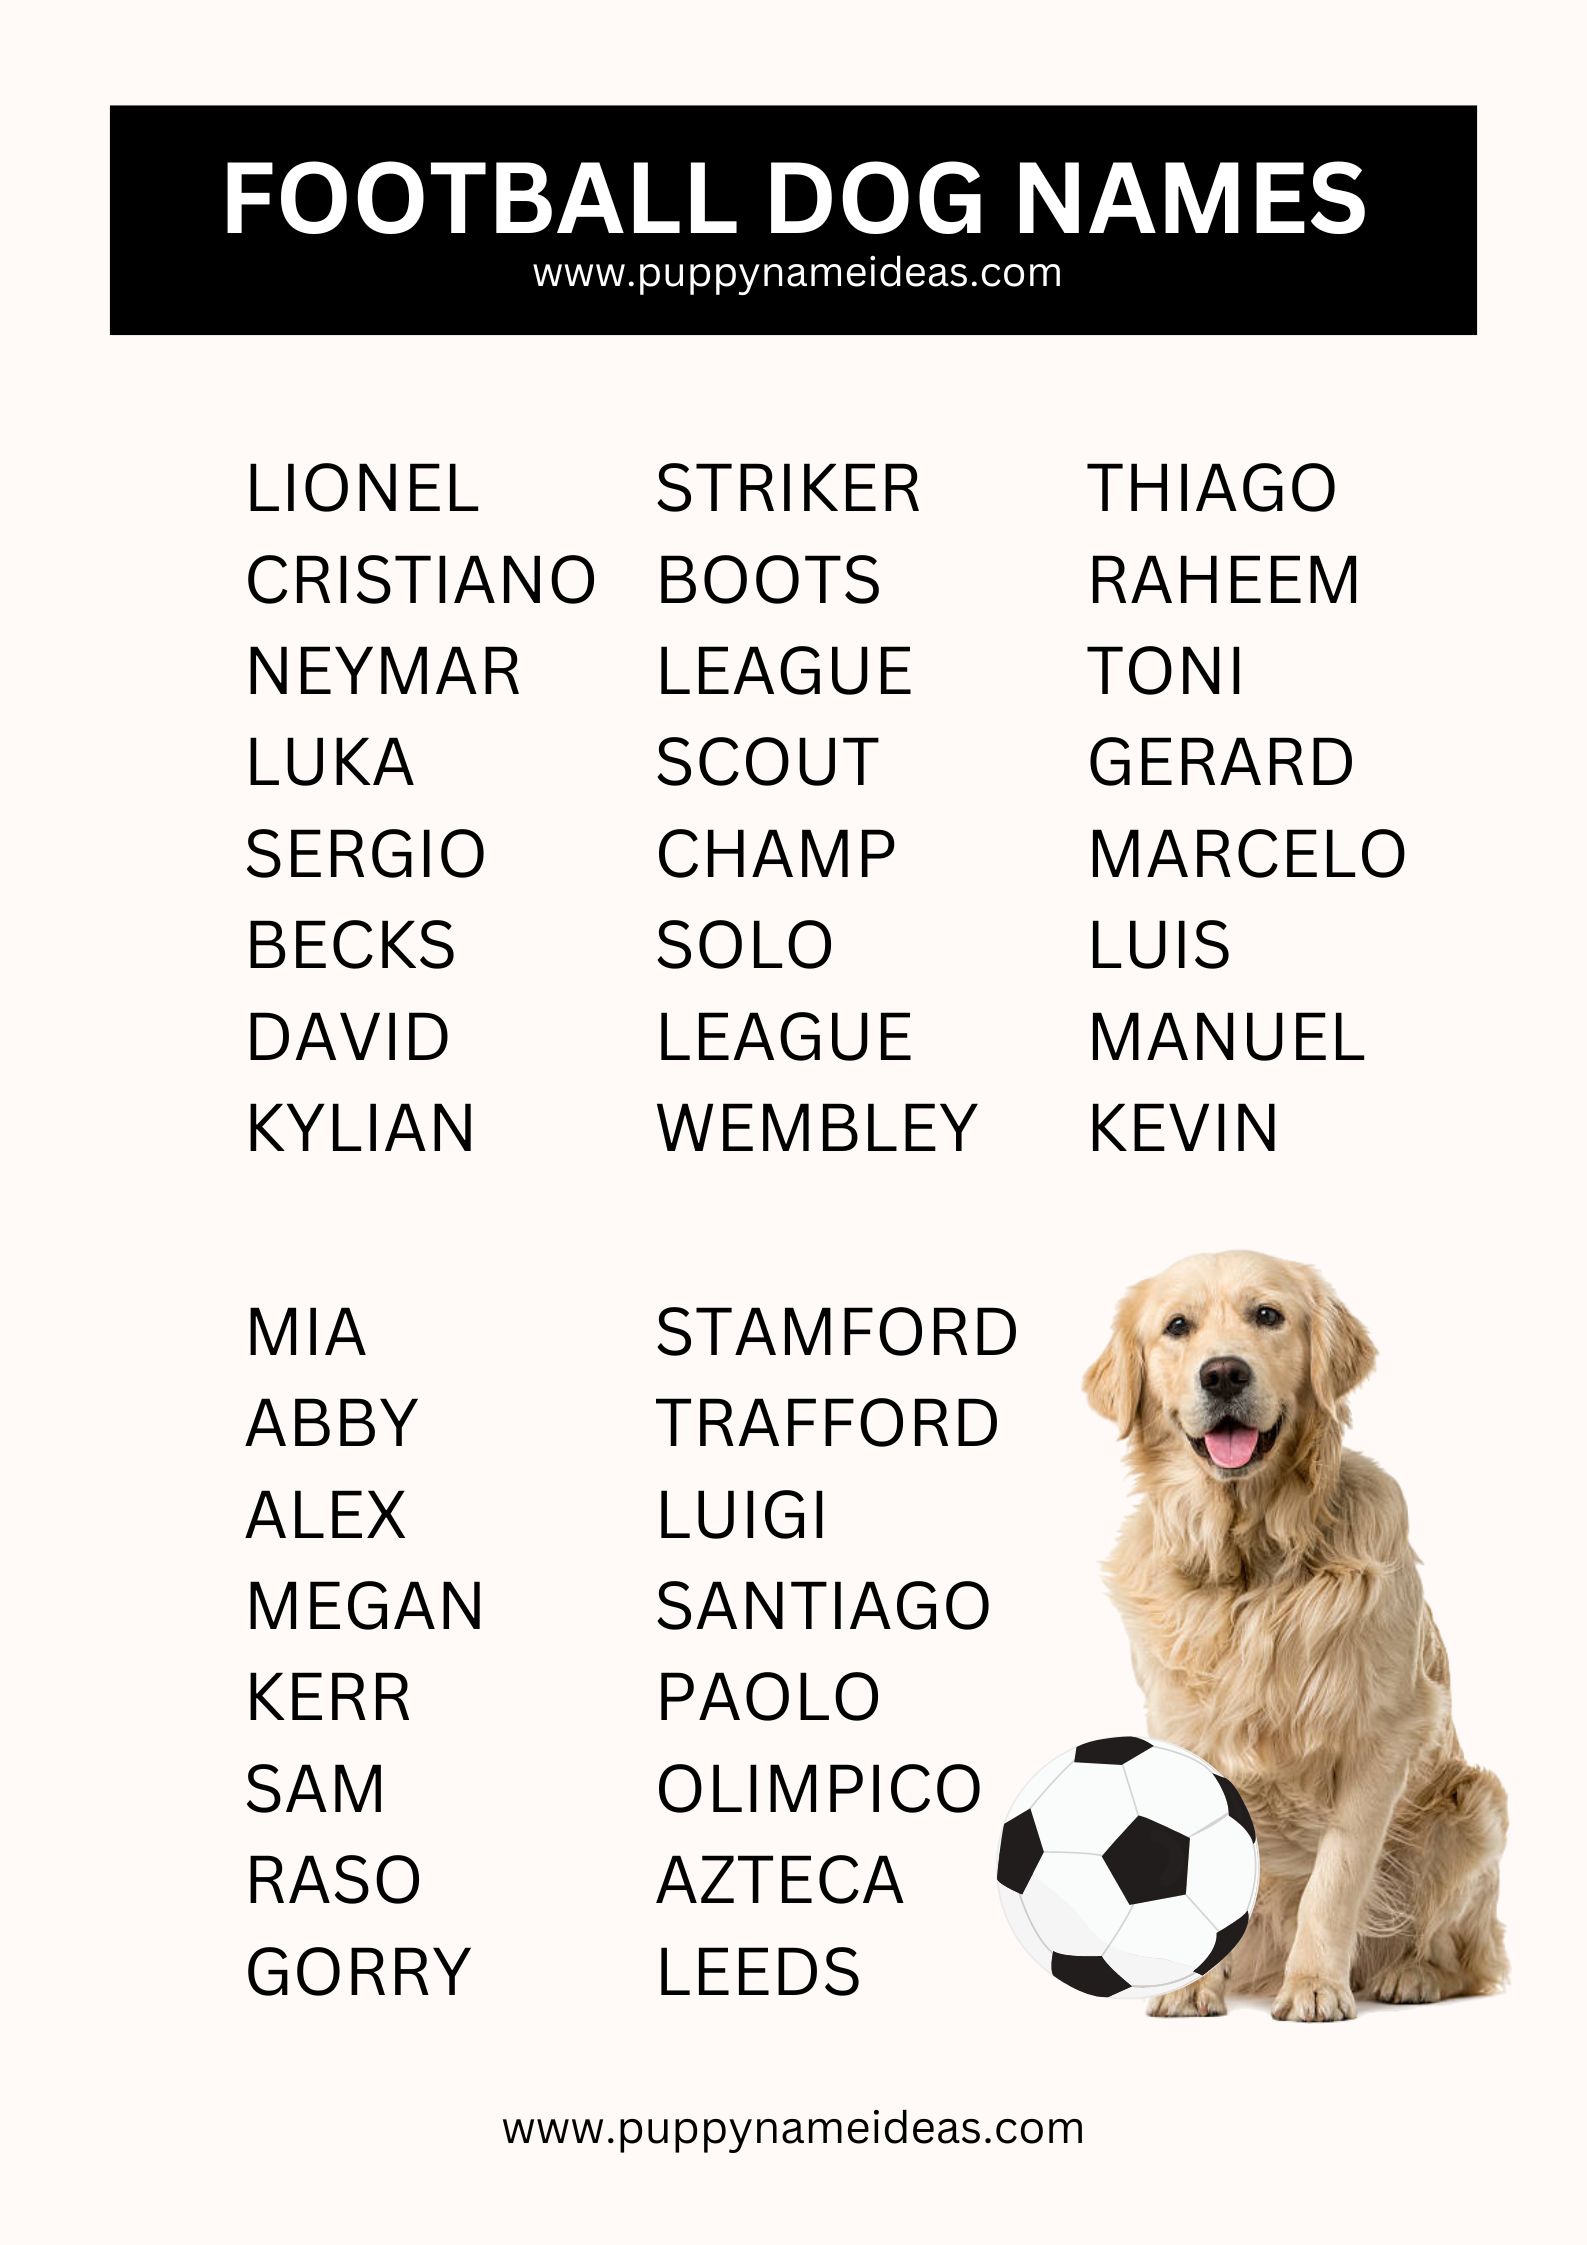 List Of Football Dog Names